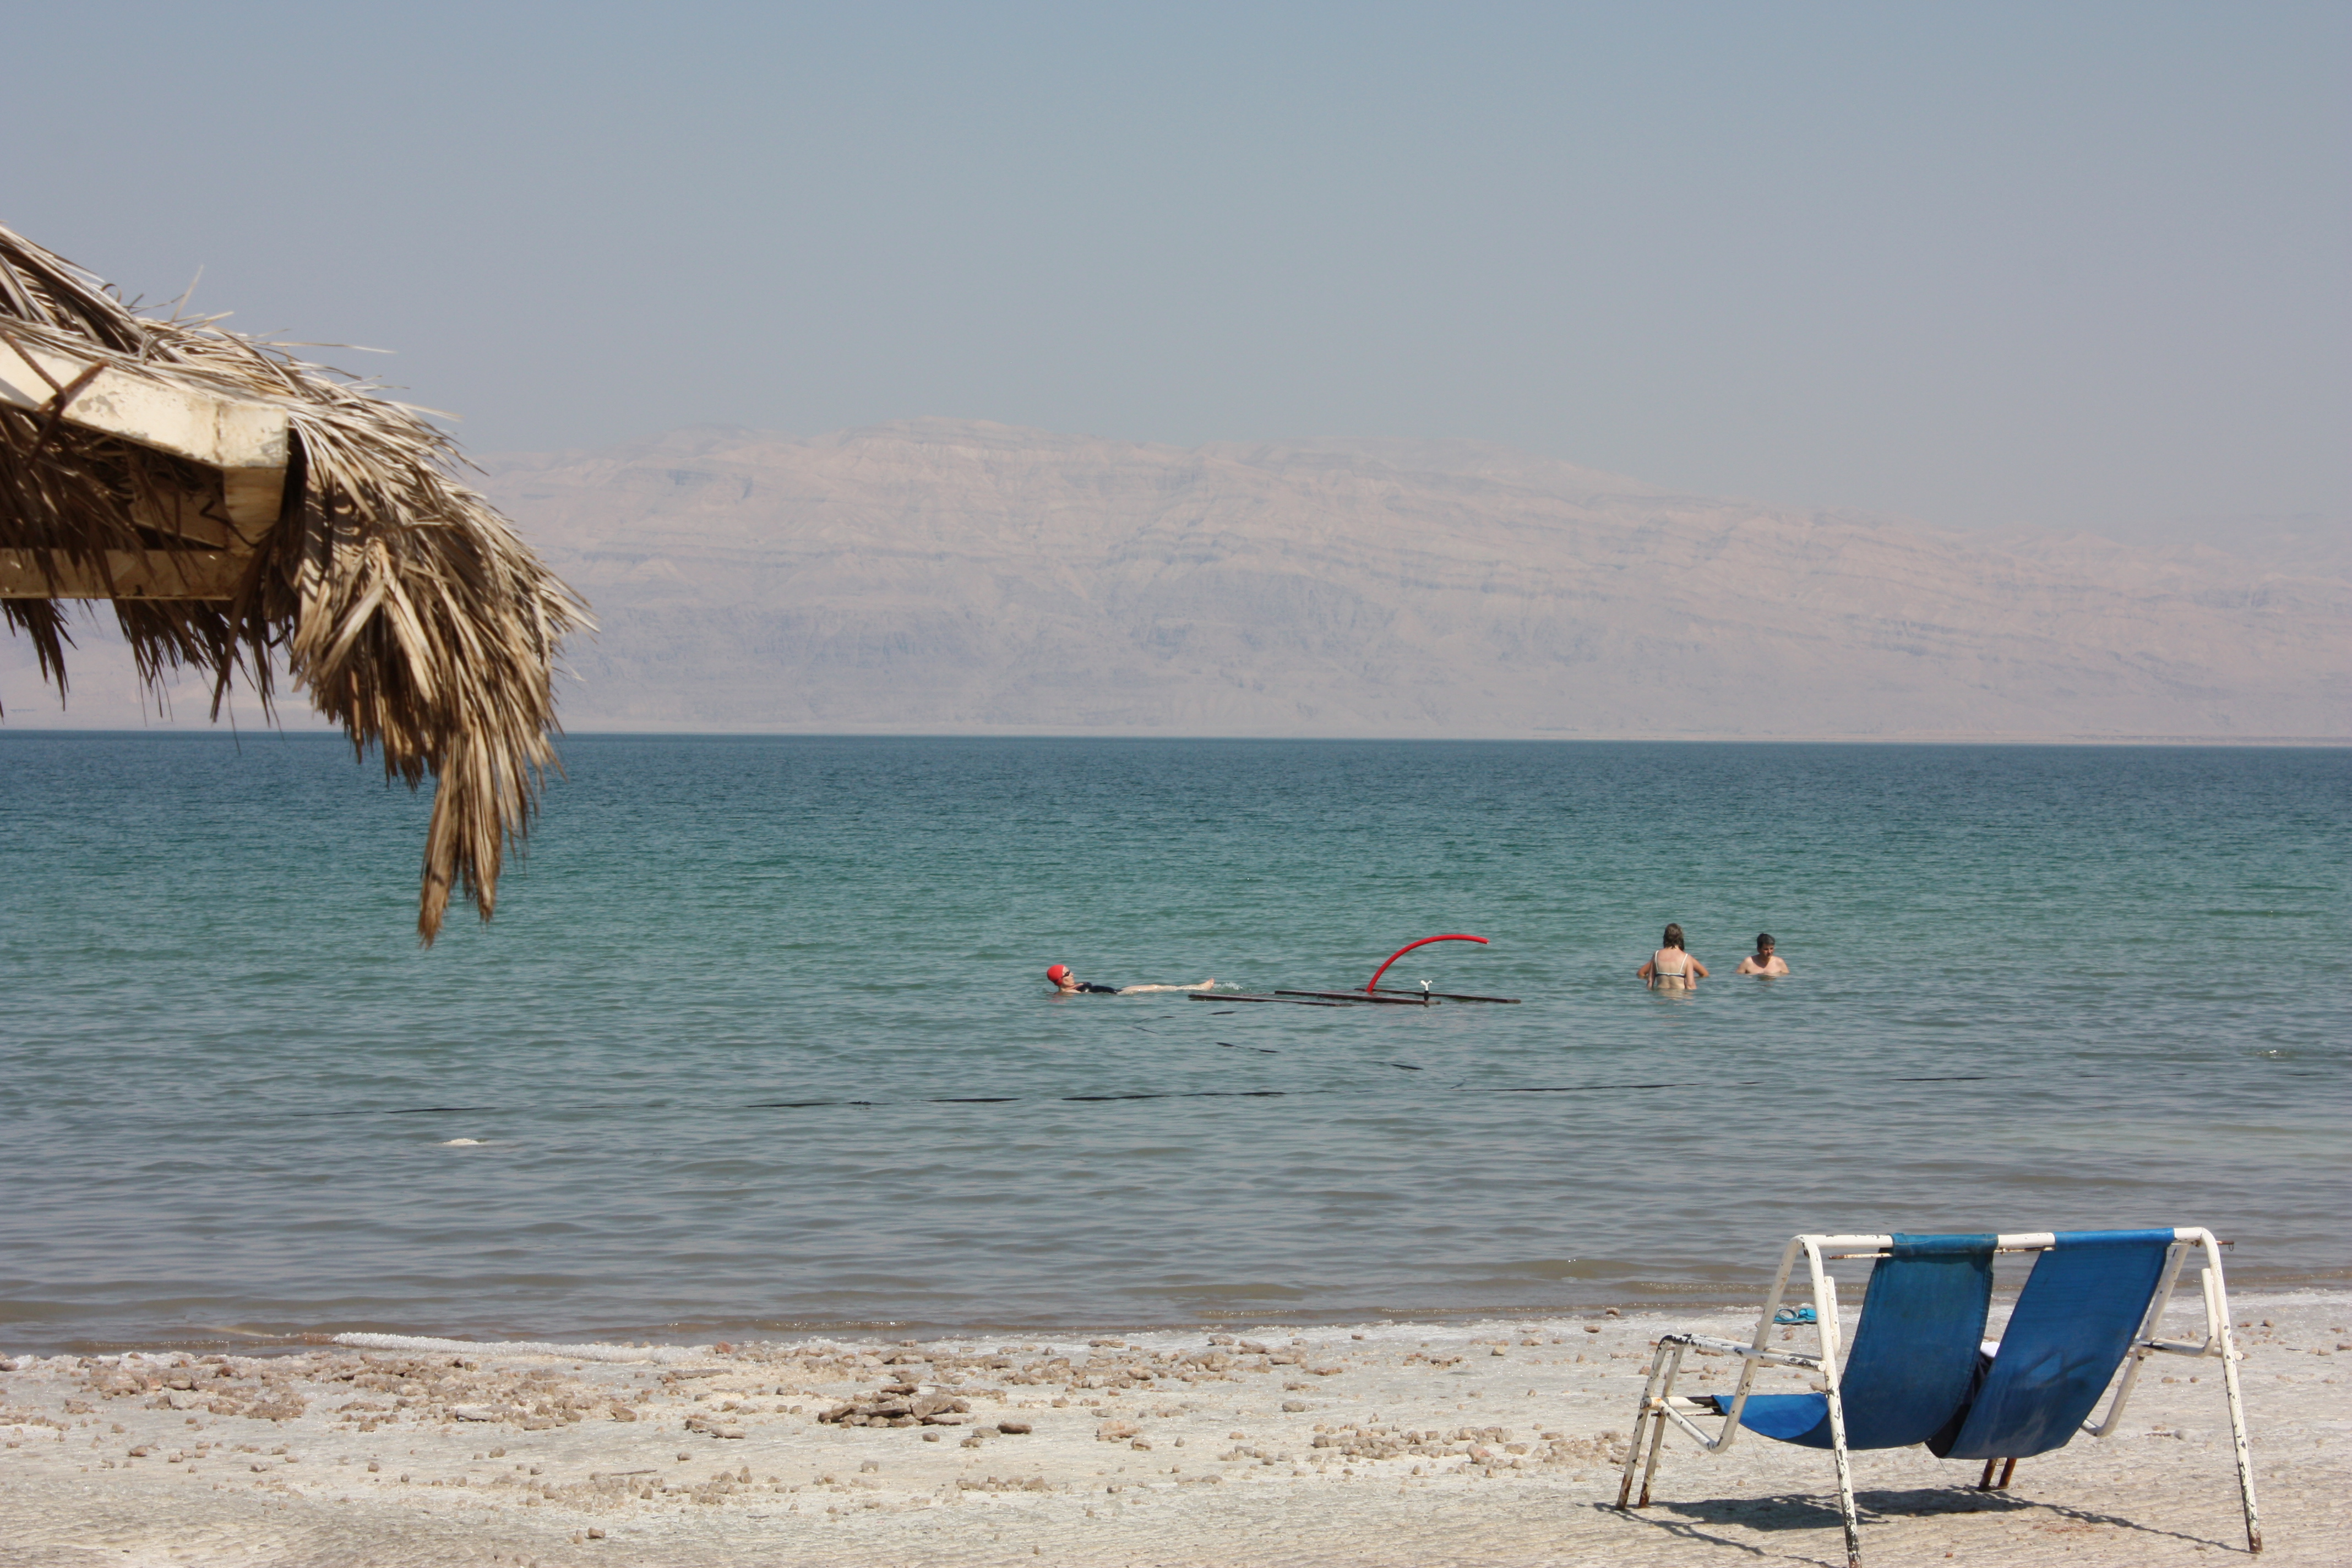 Strand des Toten Meeres mit Sonnenschirm, zwei Liegestühlen und Badegästen